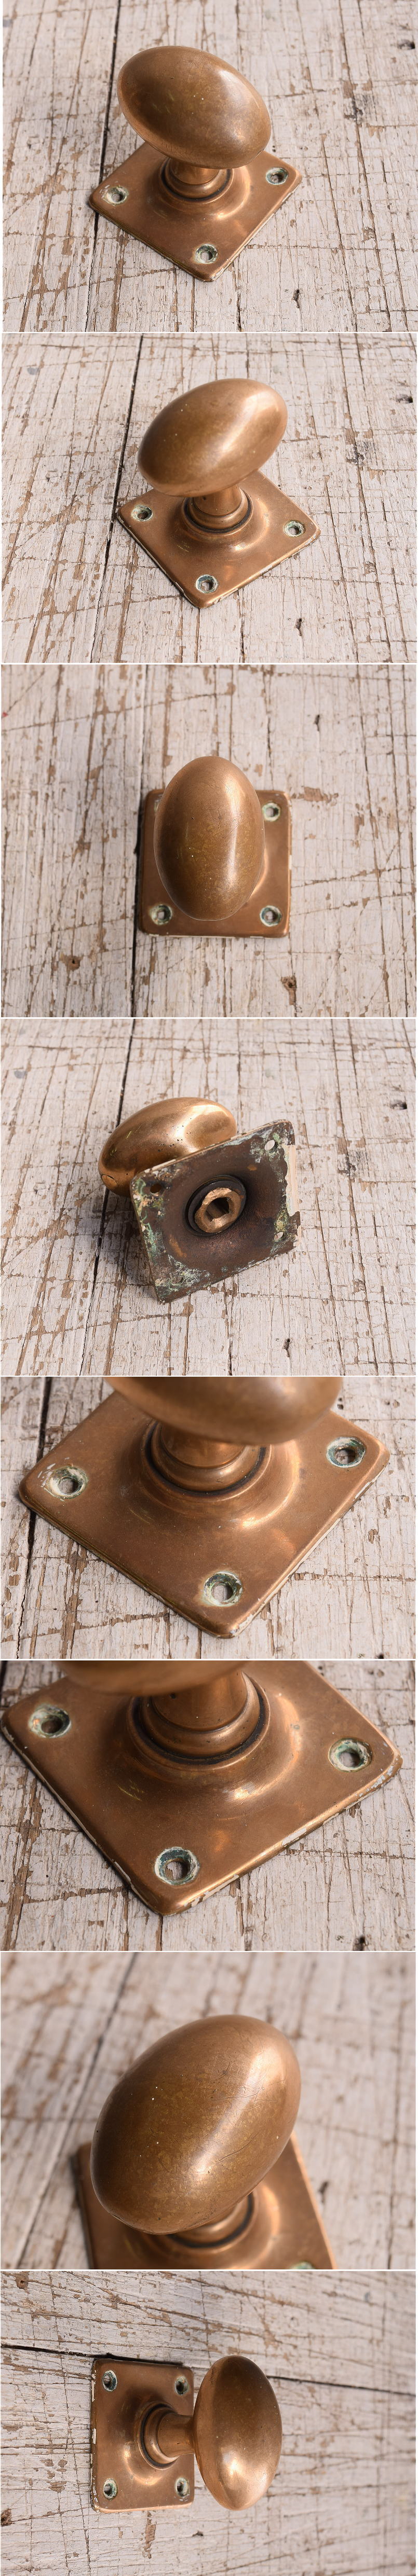 イギリス アンティーク 真鍮製 ドアノブ 建具金物 12020